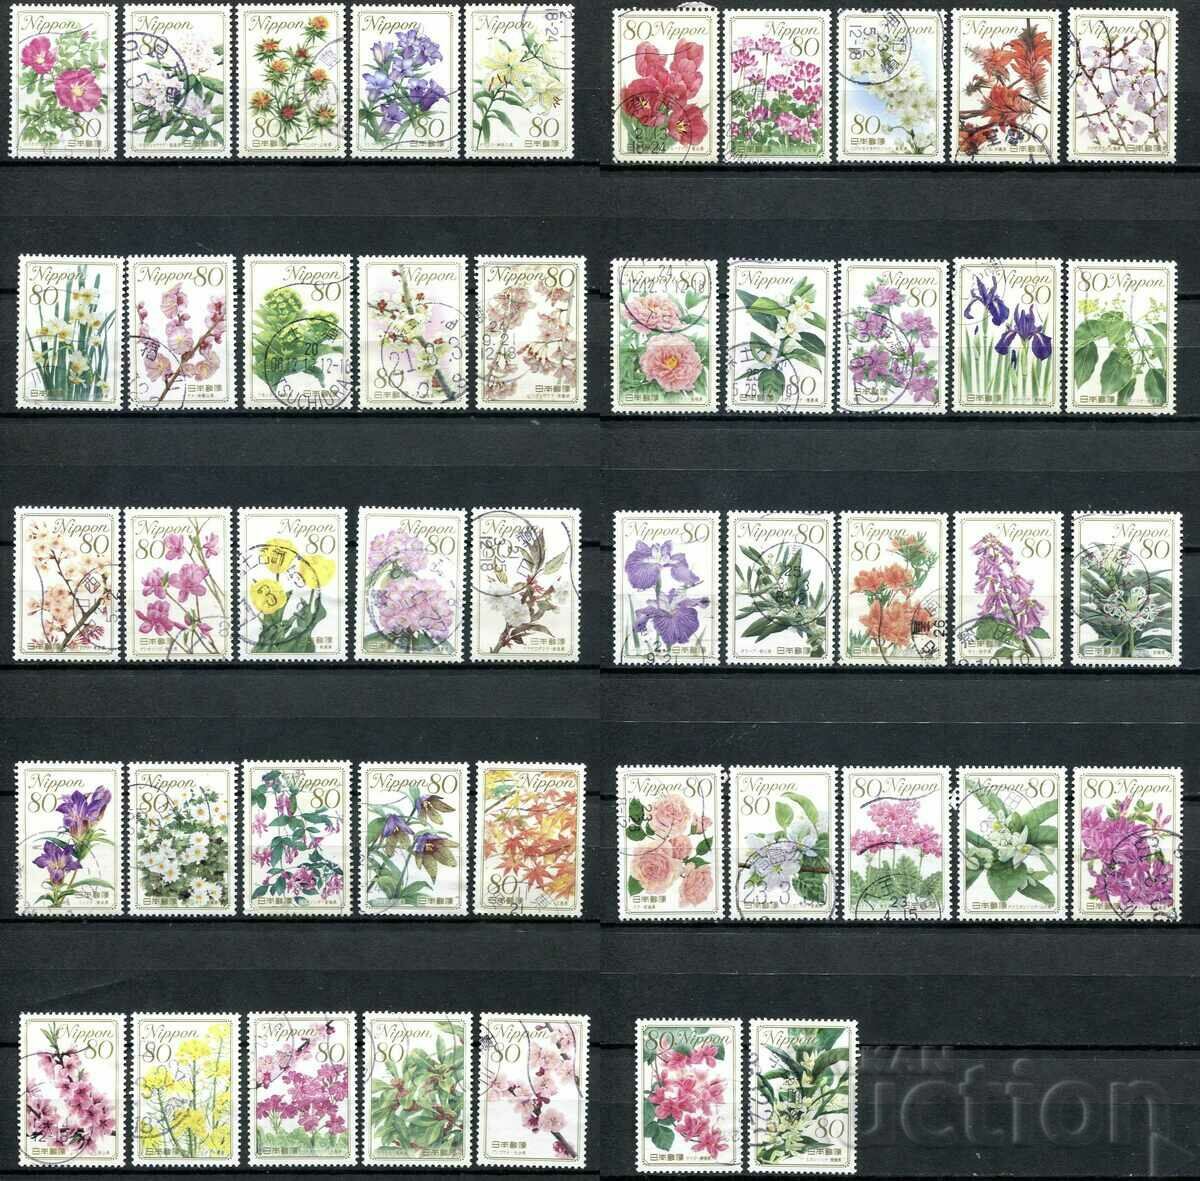 Ιαπωνία 2008-11 ΜΕΤΑΧΕΙΡΙΣΜΕΝΟ - Λουλούδια, χλωρίδα [πλήρης σειρά]